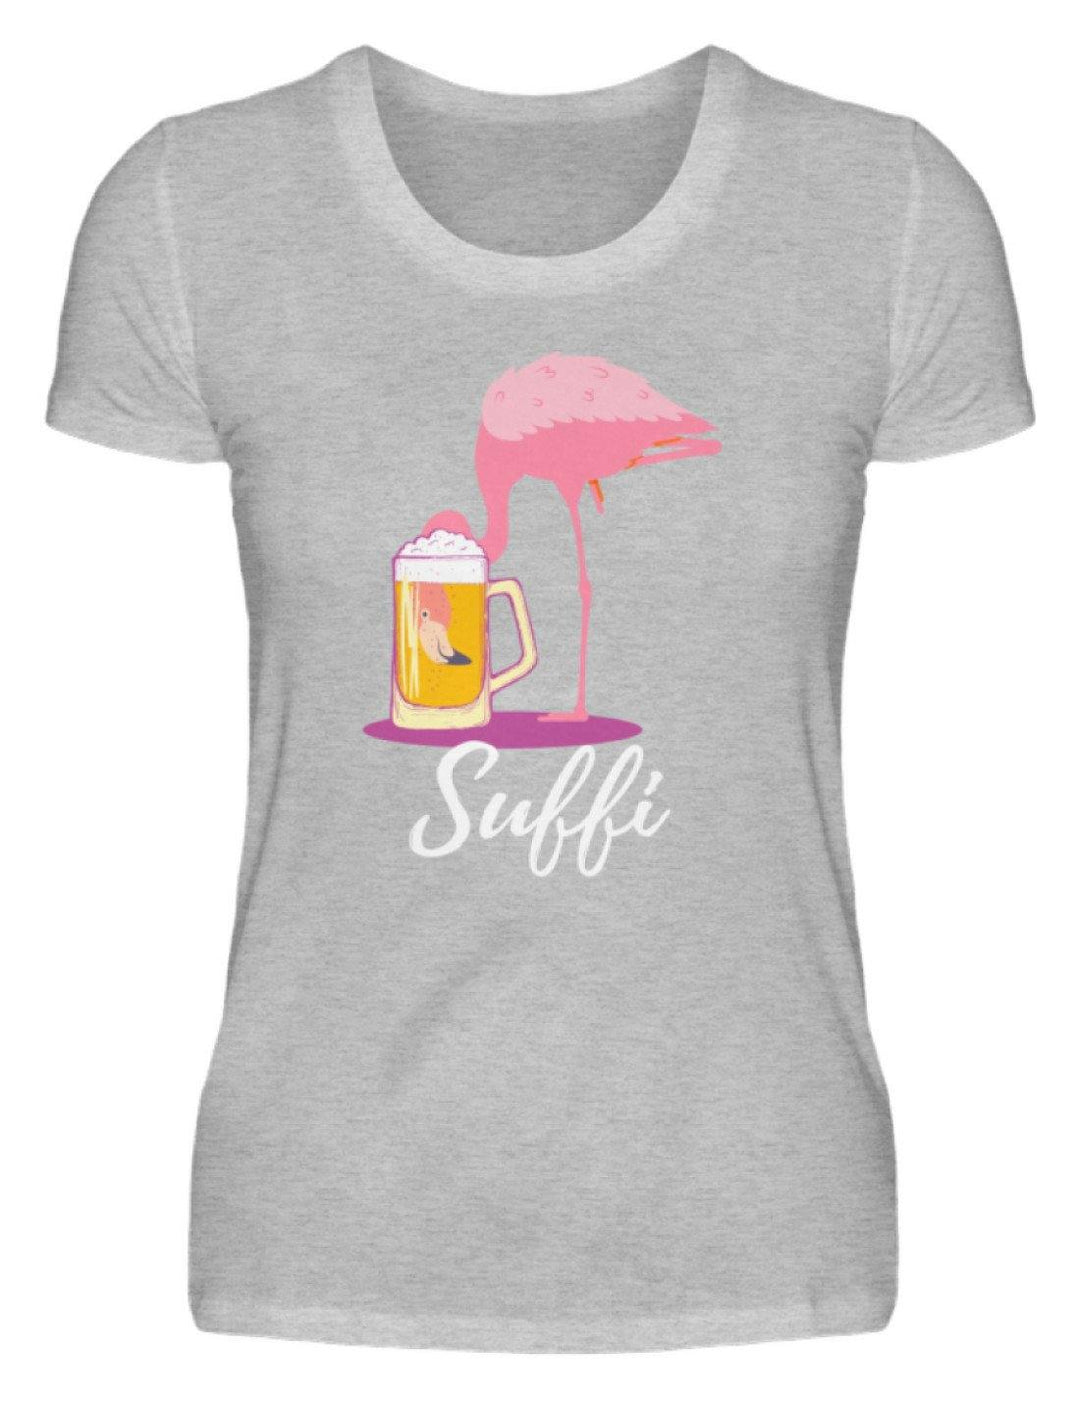 Flamingo Suffi - Words on Shirt  - Damenshirt - Words on Shirts Sag es mit dem Mittelfinger Shirts Hoodies Sweatshirt Taschen Gymsack Spruch Sprüche Statement